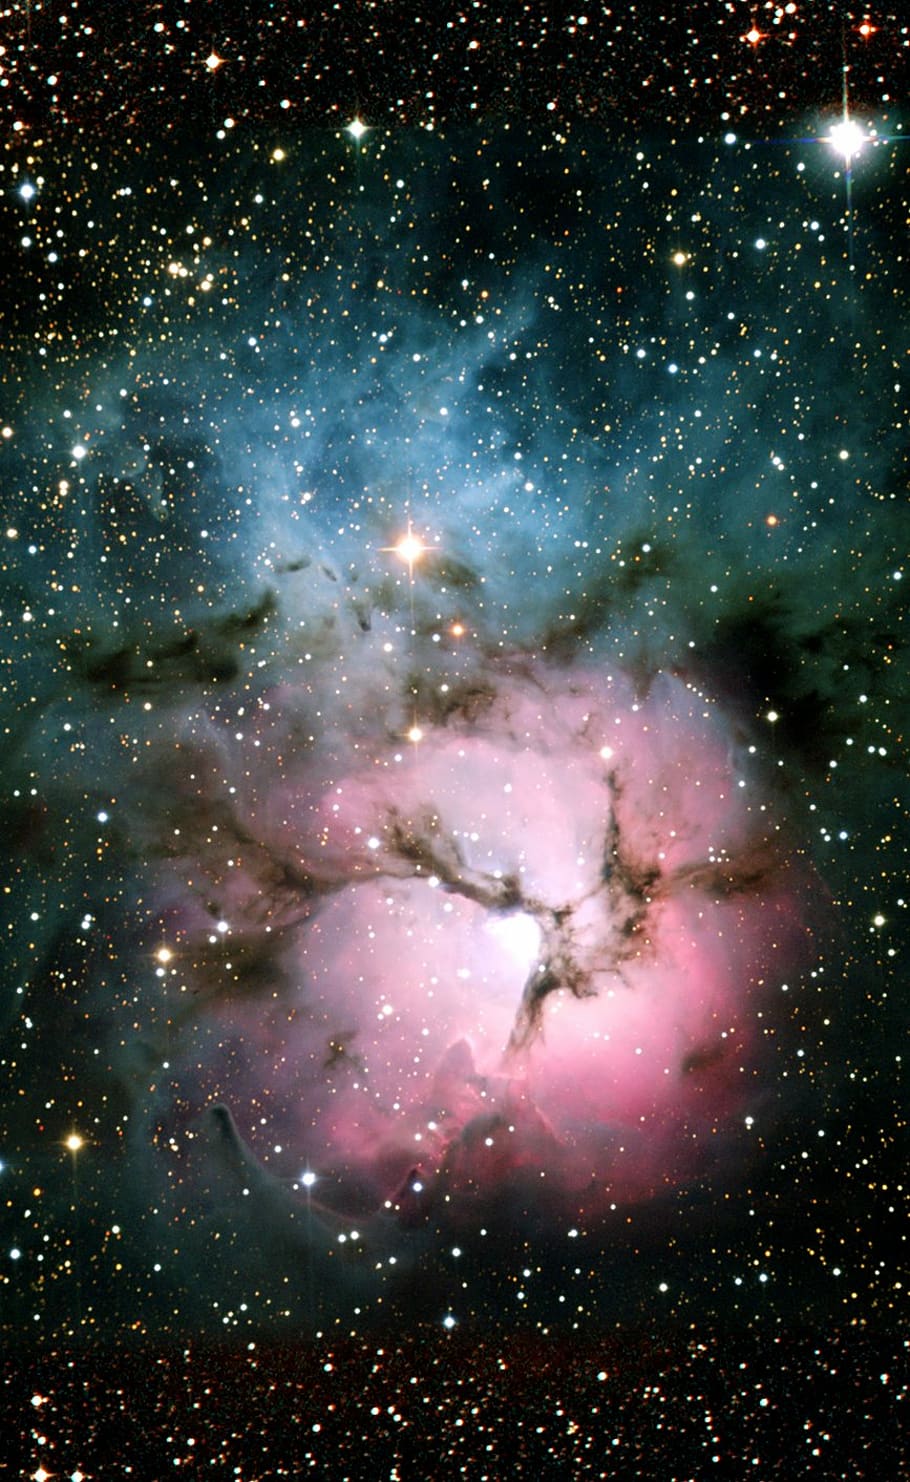 nebulosa trífida, messier 20, ngc 6514, nebulosa de emisión, nebulosas de reflexión, constelación sagitario, galaxia, cielo estrellado, espacio, universo